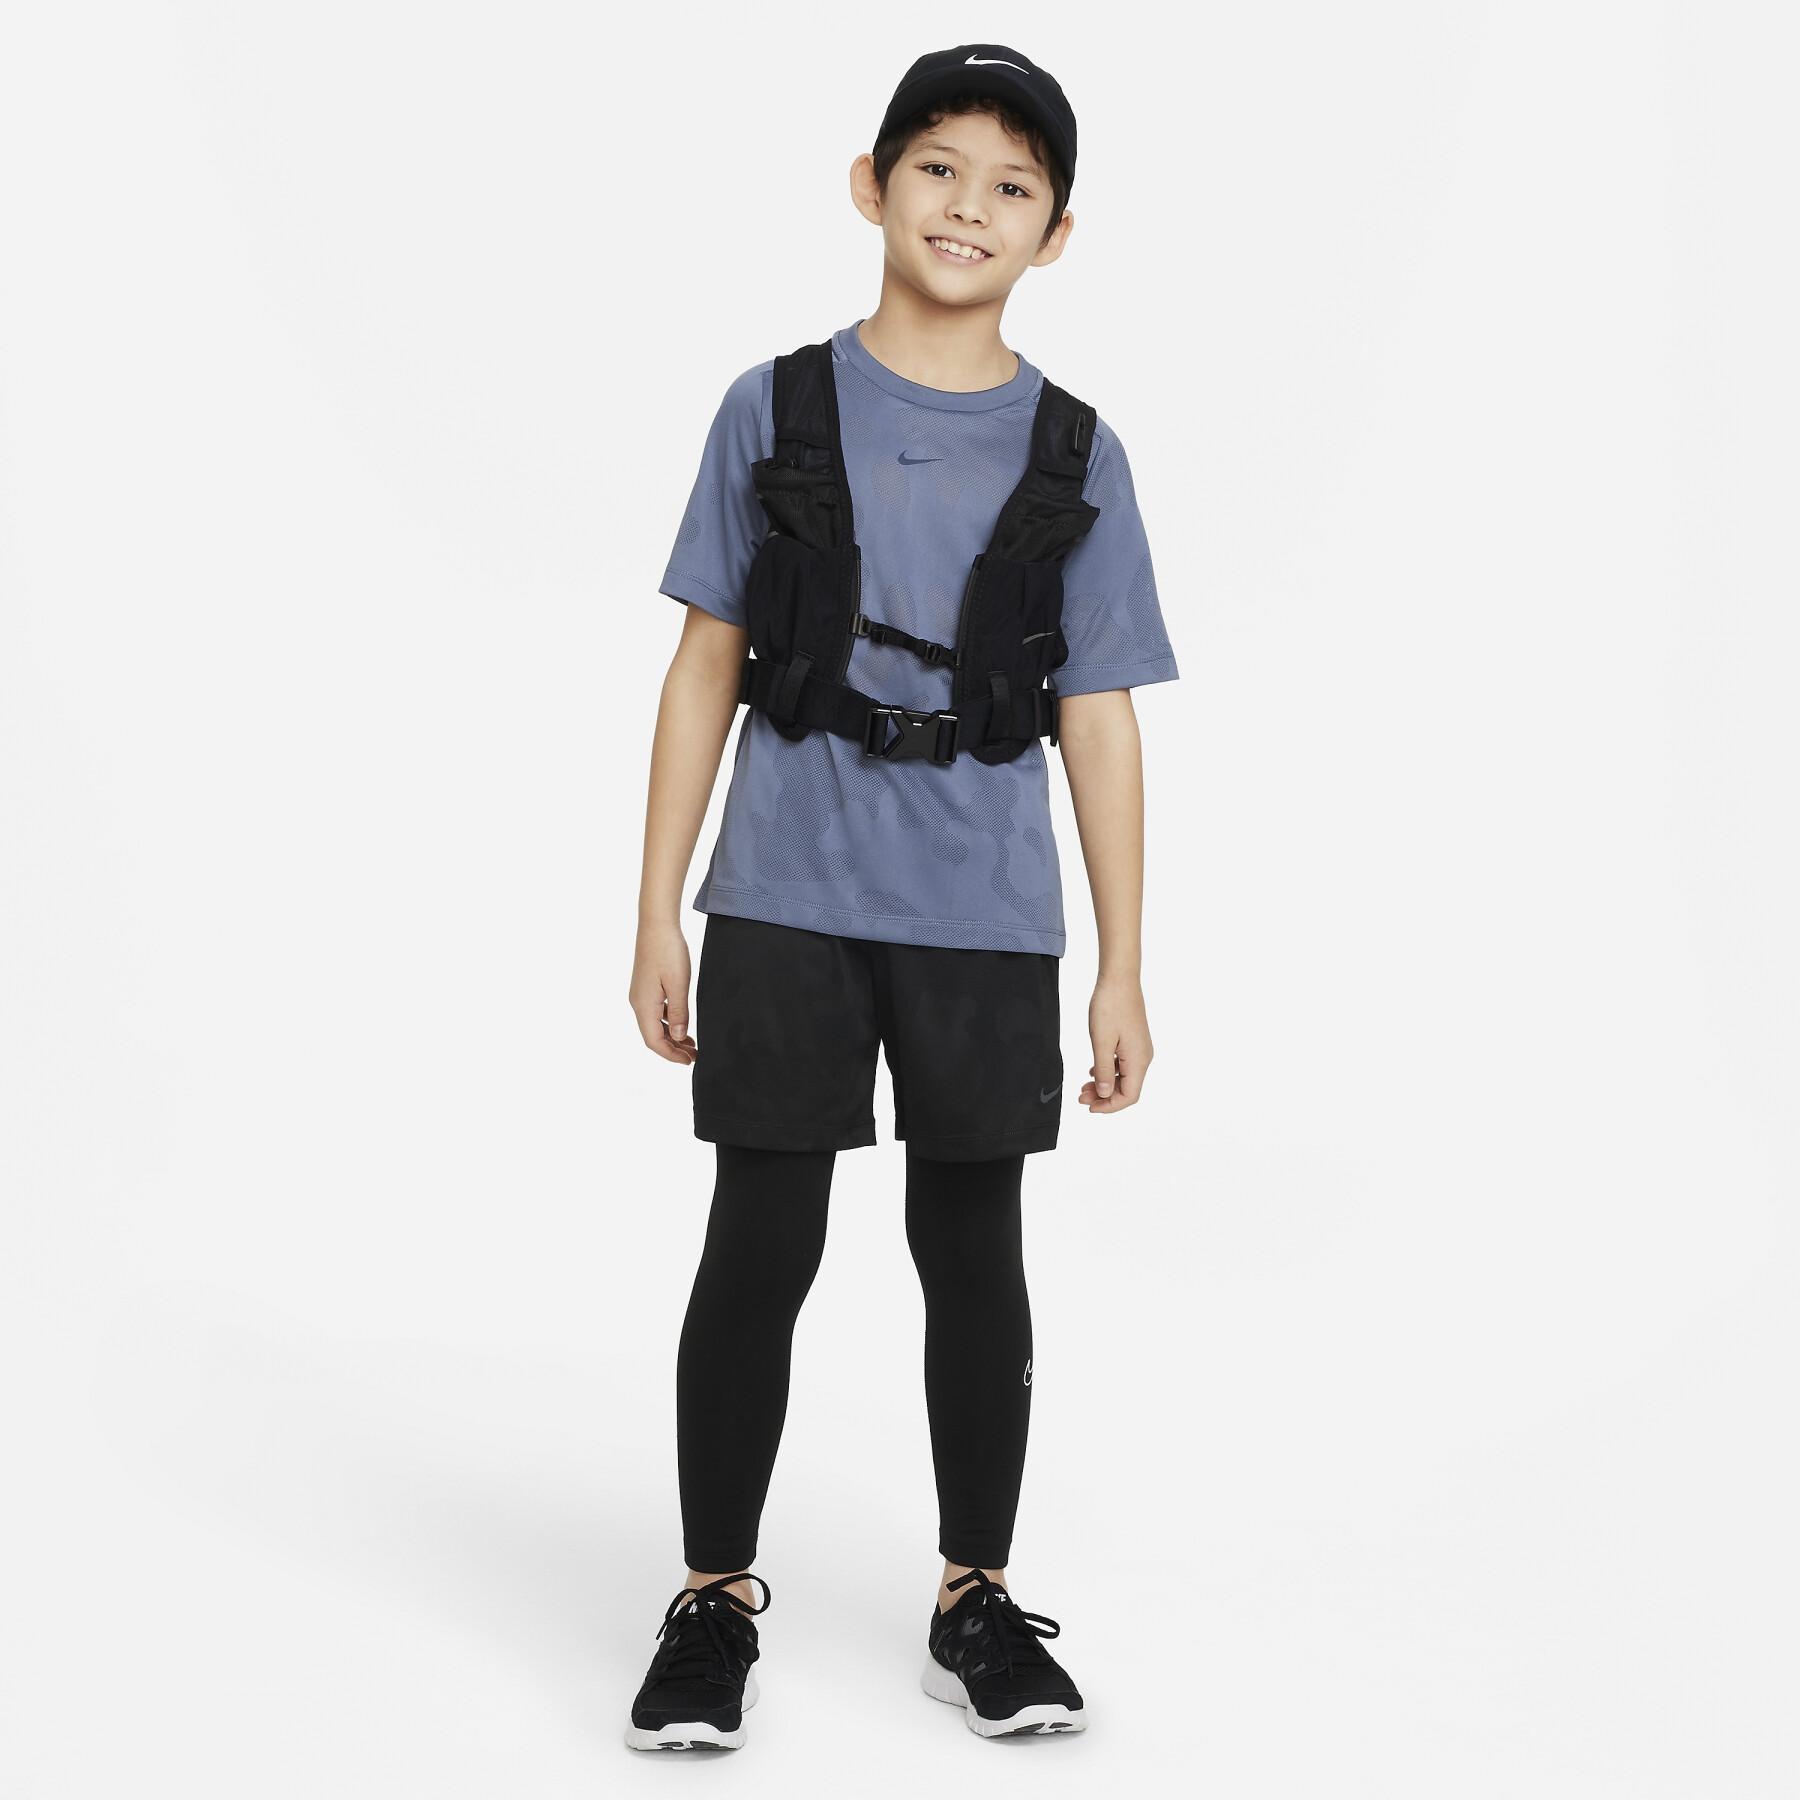 Kindertrikot Nike Dri-FIT Multi + Gear Down